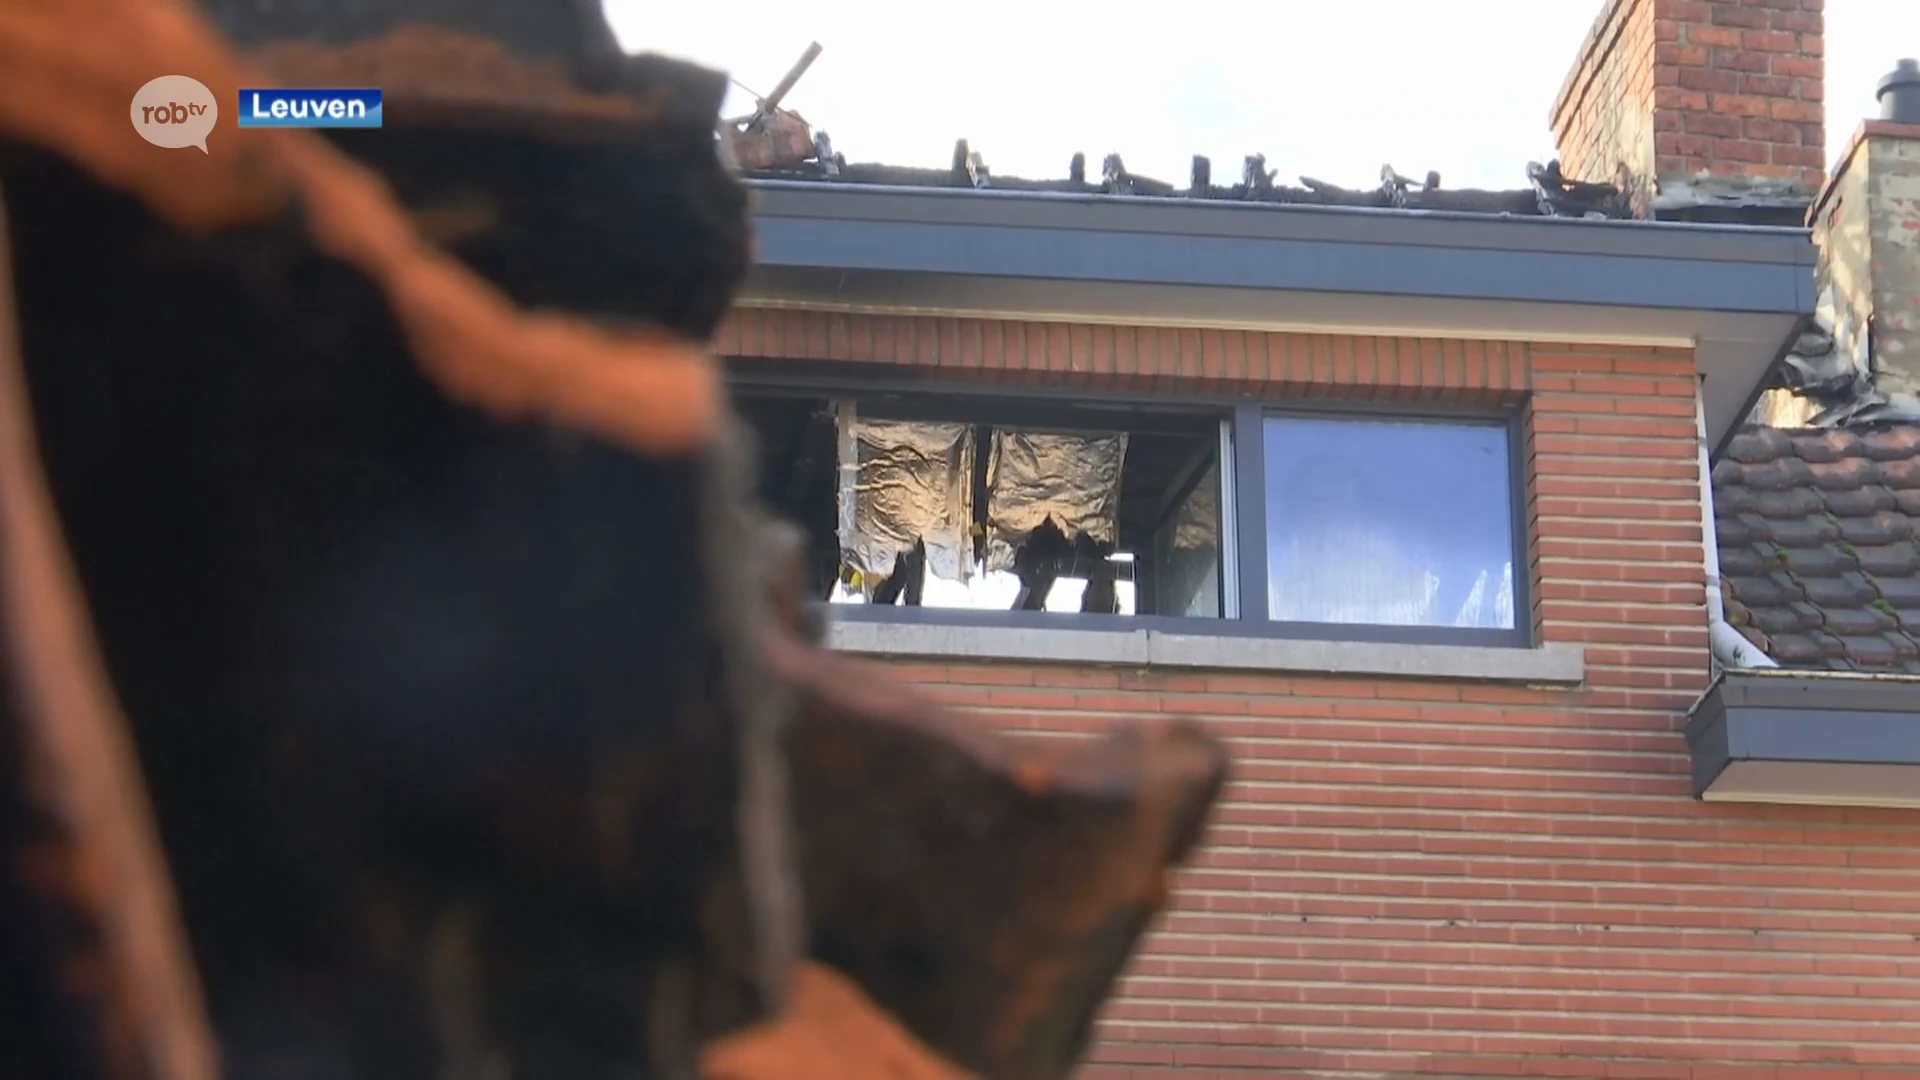 Woning onbewoonbaar verklaard in Leuven na zware brand, 5 mensen kunnen ontkomen